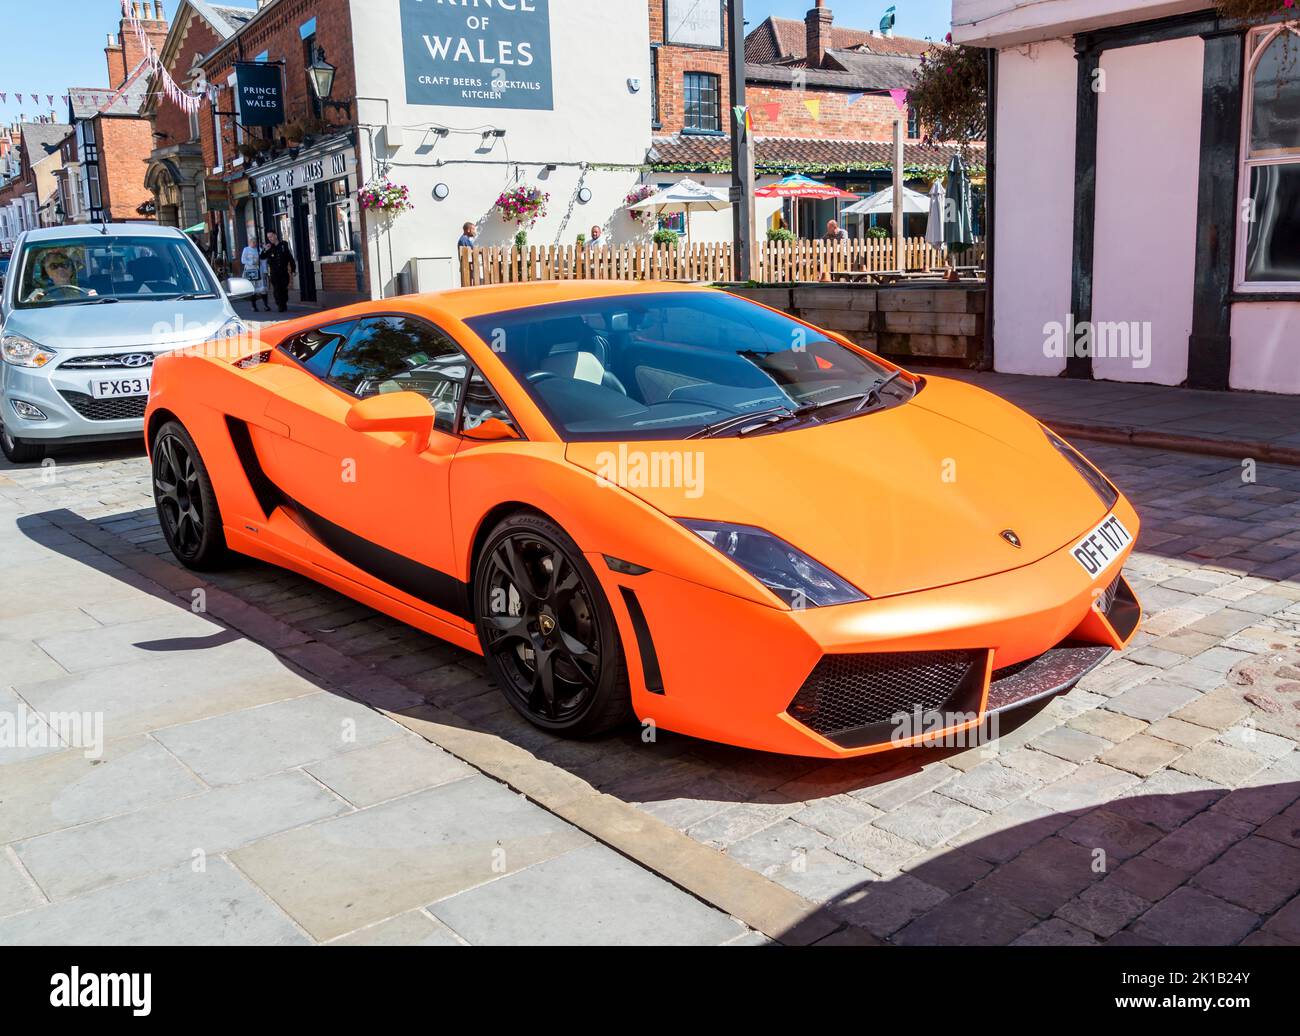 Orange Lamborghini sports car parked in Bailgate, Lincoln city 2022 Stock Photo